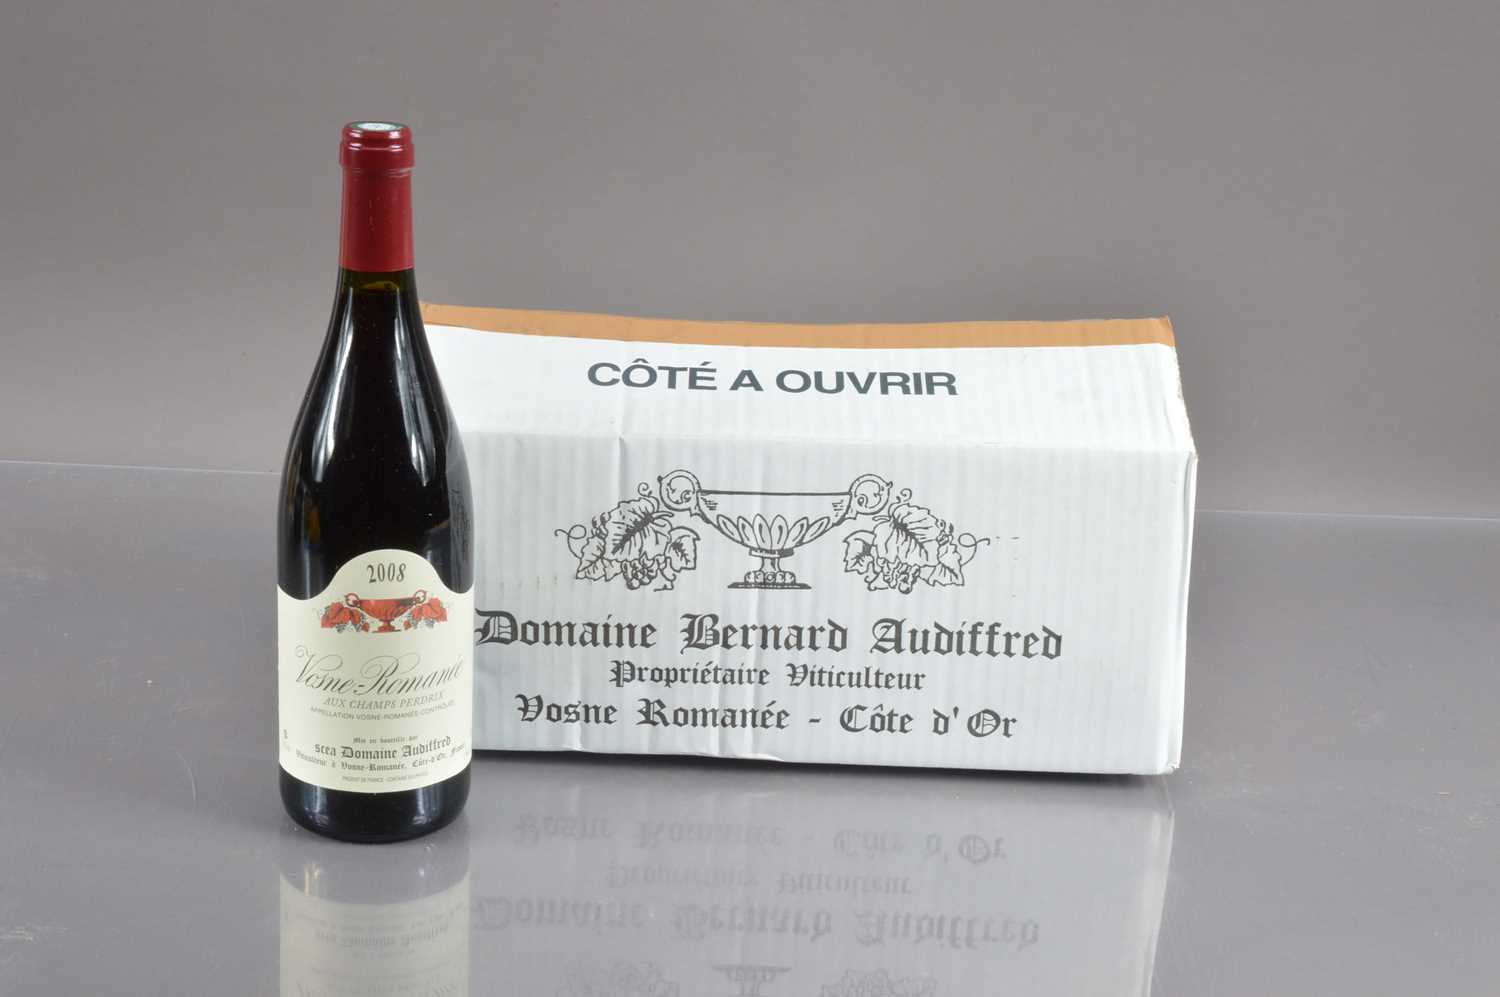 Six bottles of Vosne Romanee 'Aux Champs Perdrix' 2008,